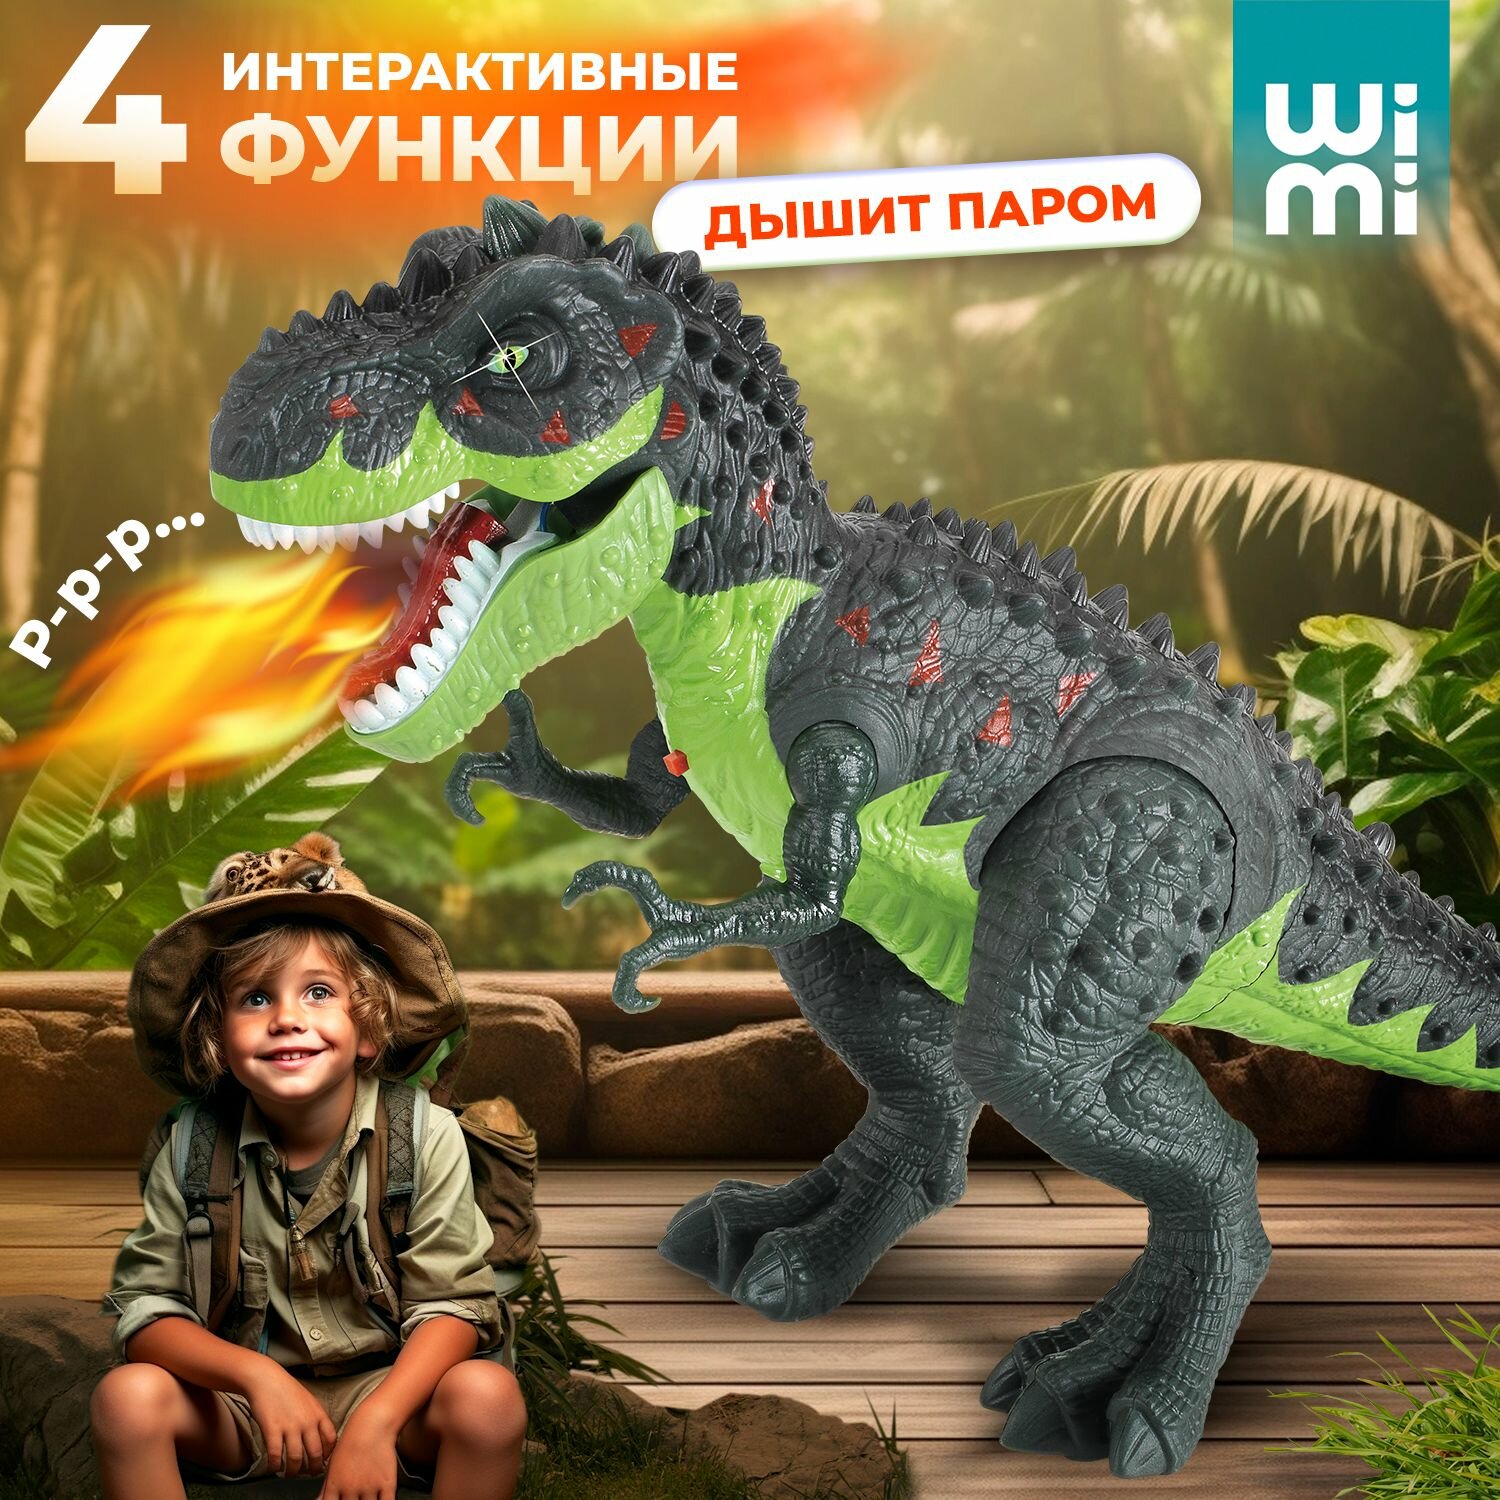 Интерактивная игрушка динозавр WiMi робот с паром